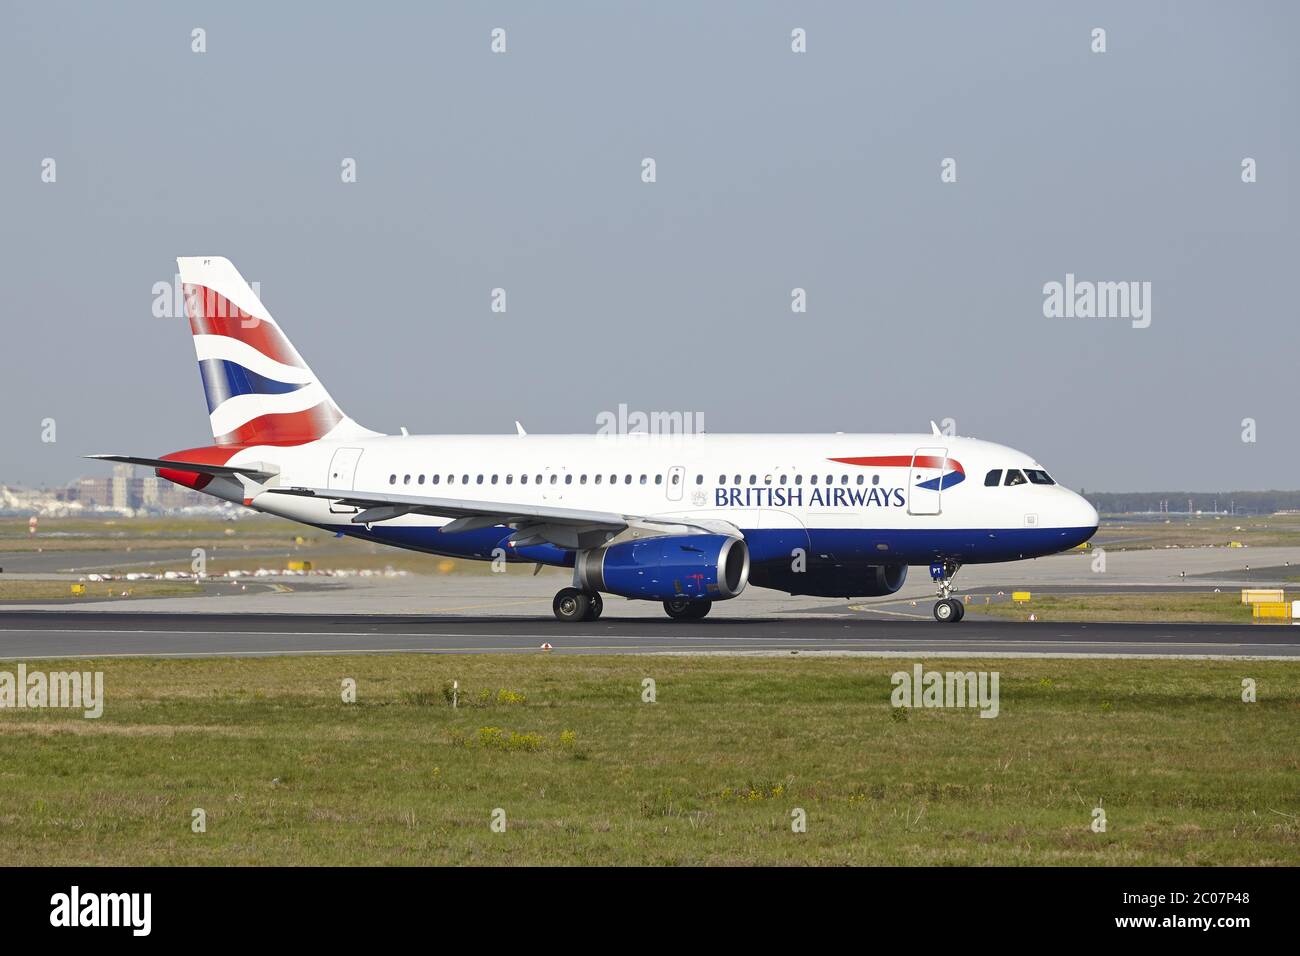 Aeroporto di Francoforte - lancio di un Airbus A319 da British Airways Foto Stock